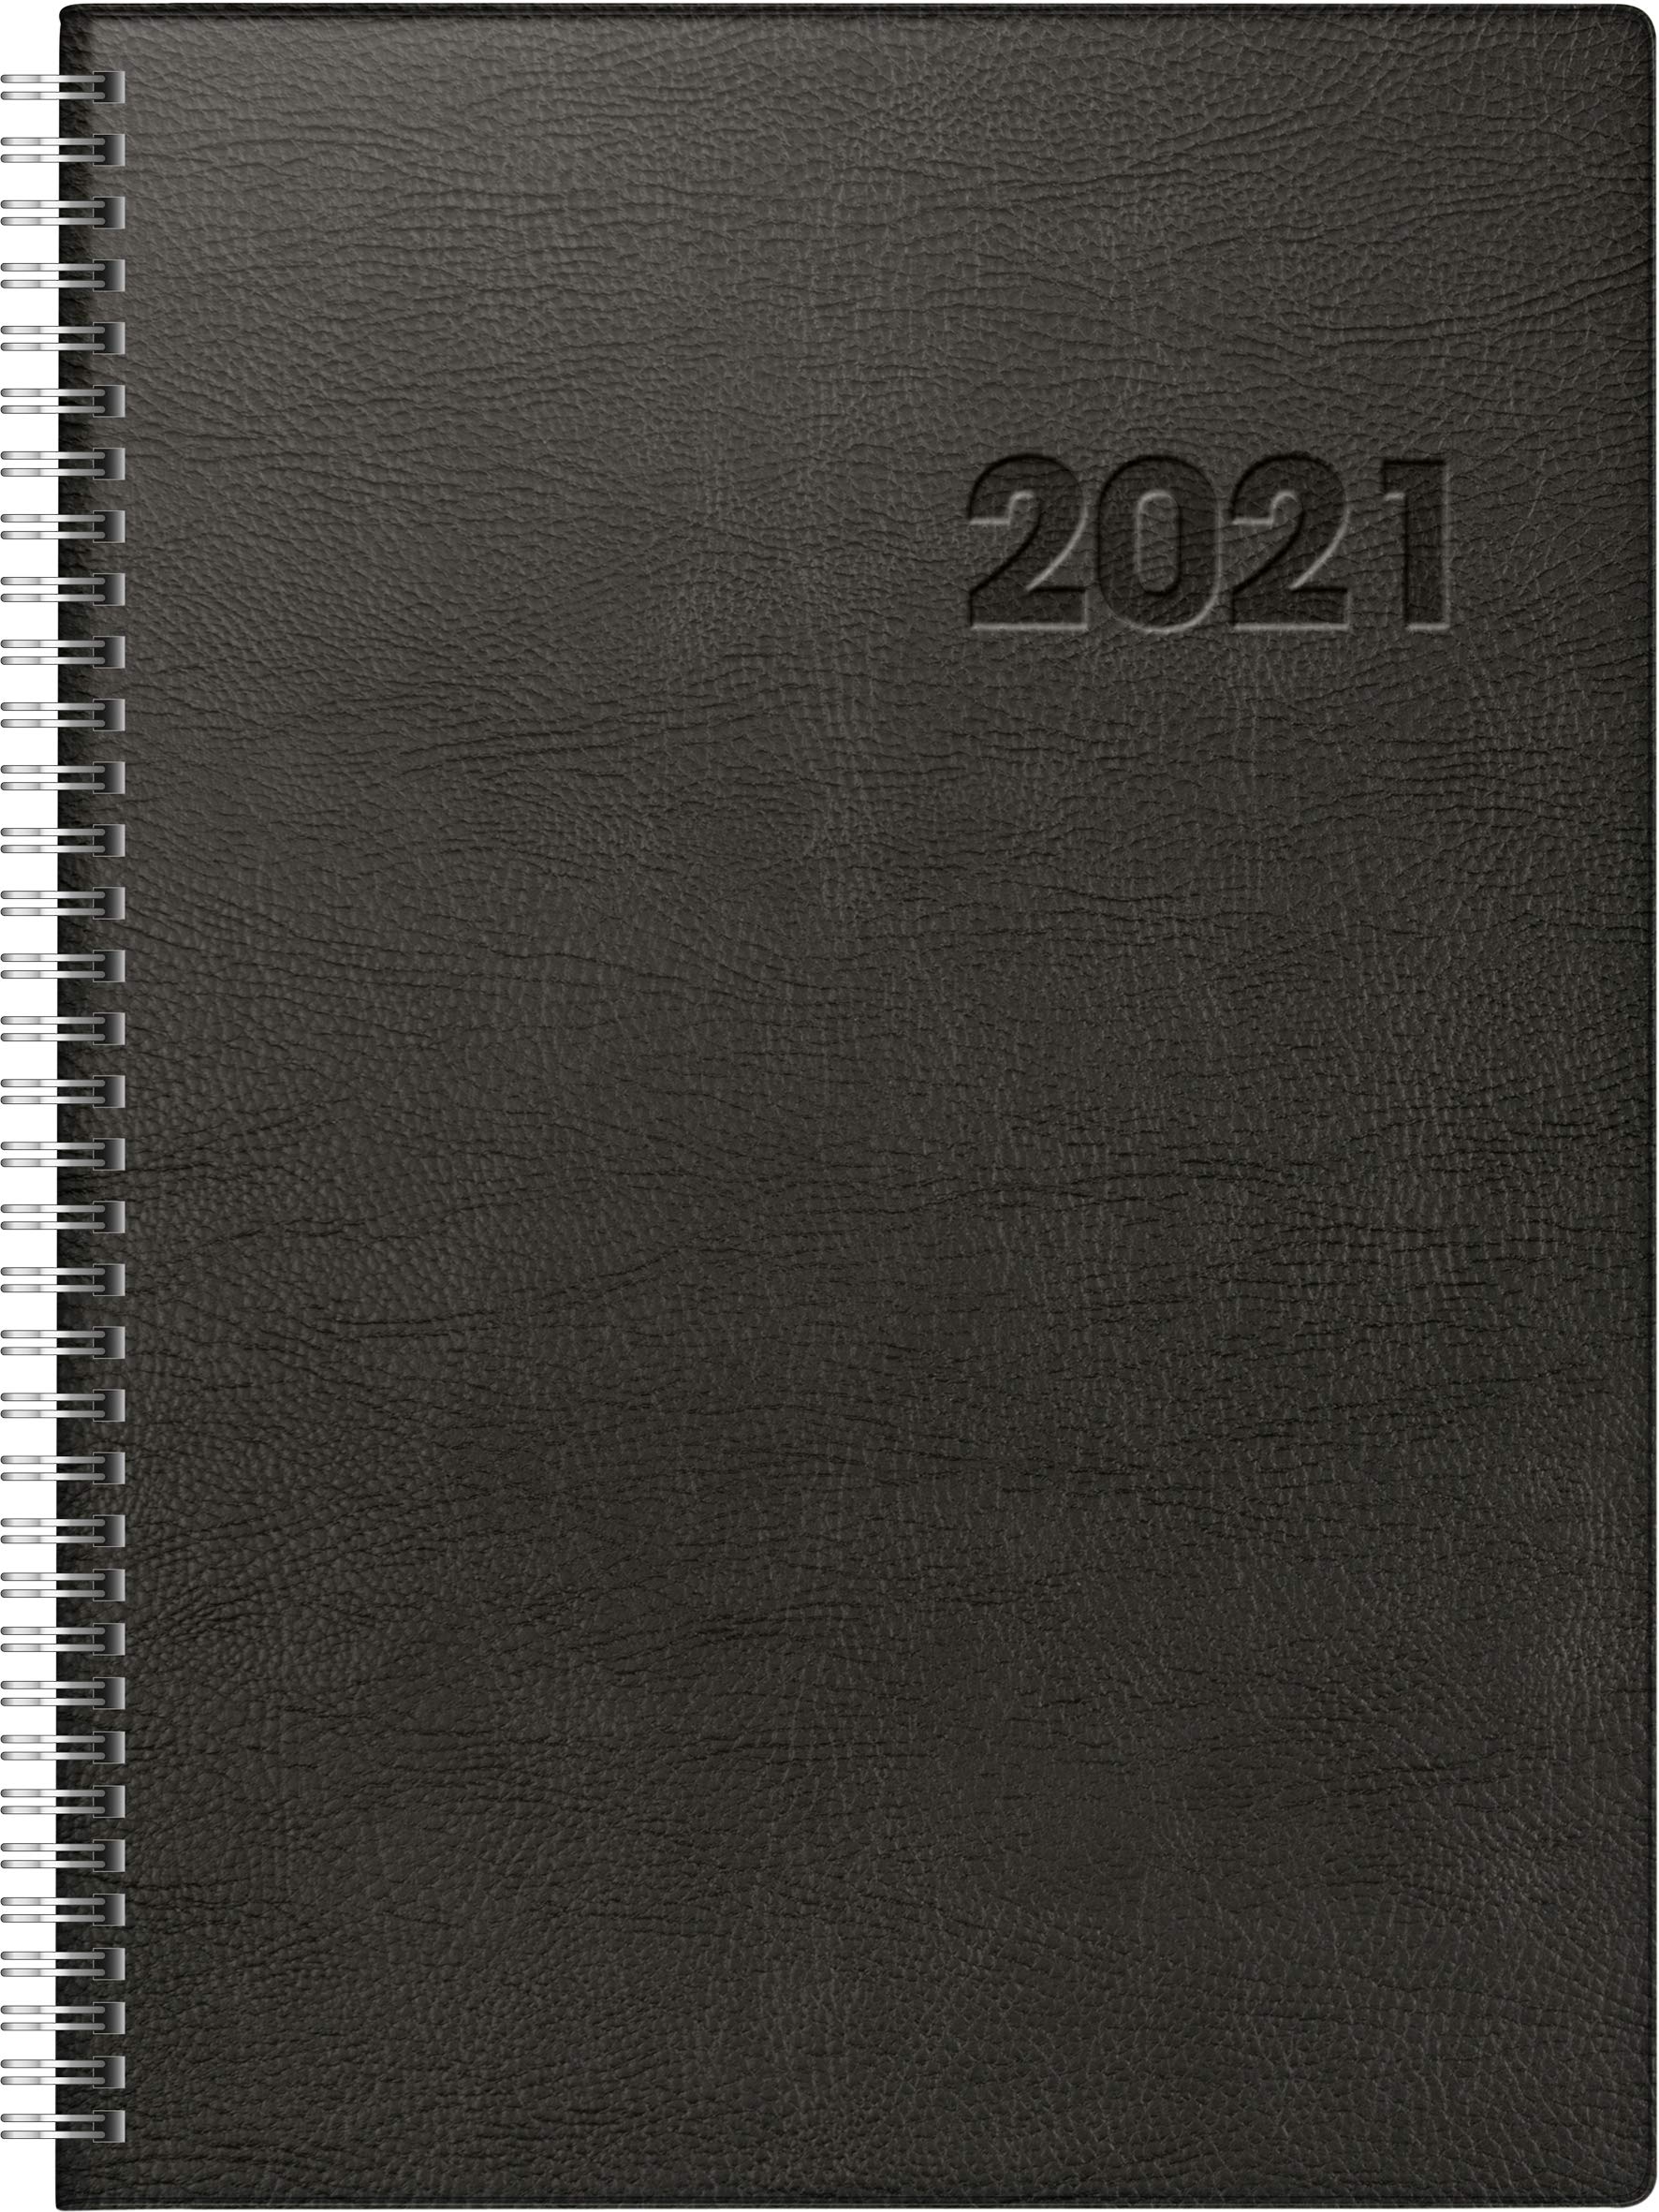 rido/idé 7027501901 Buchkalender Conform, 1 Seite = 1 Tag, 210 x 291 mm, Kunststoff-Decke schwarz, Kalendarium 2021, Wire-O-Bindung